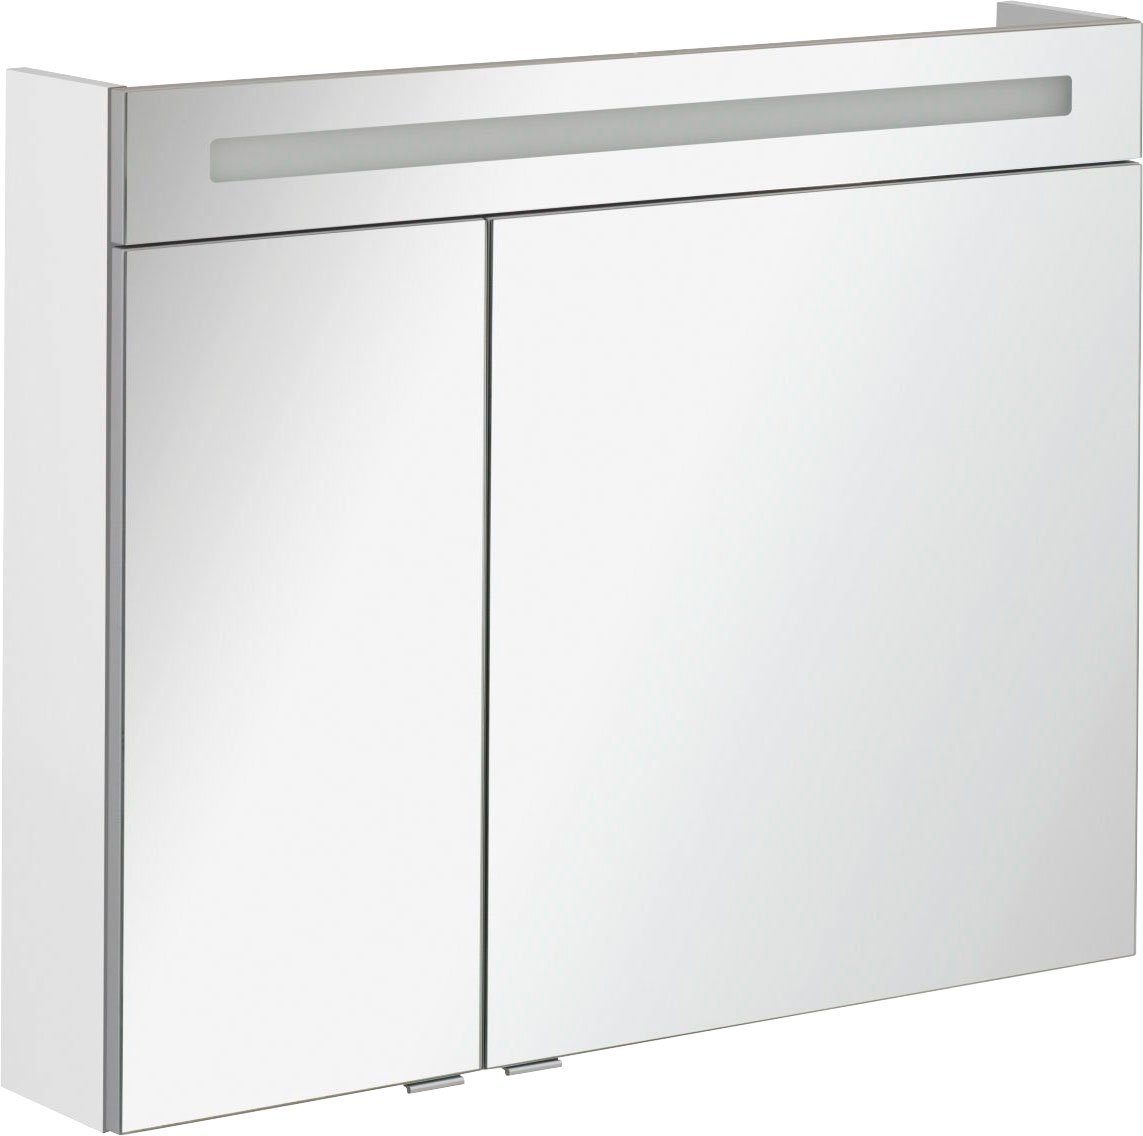 FACKELMANN Spiegelkast CL 90 - wit Breedte 90 cm, 2 deuren, dubbelzijdig spiegelend